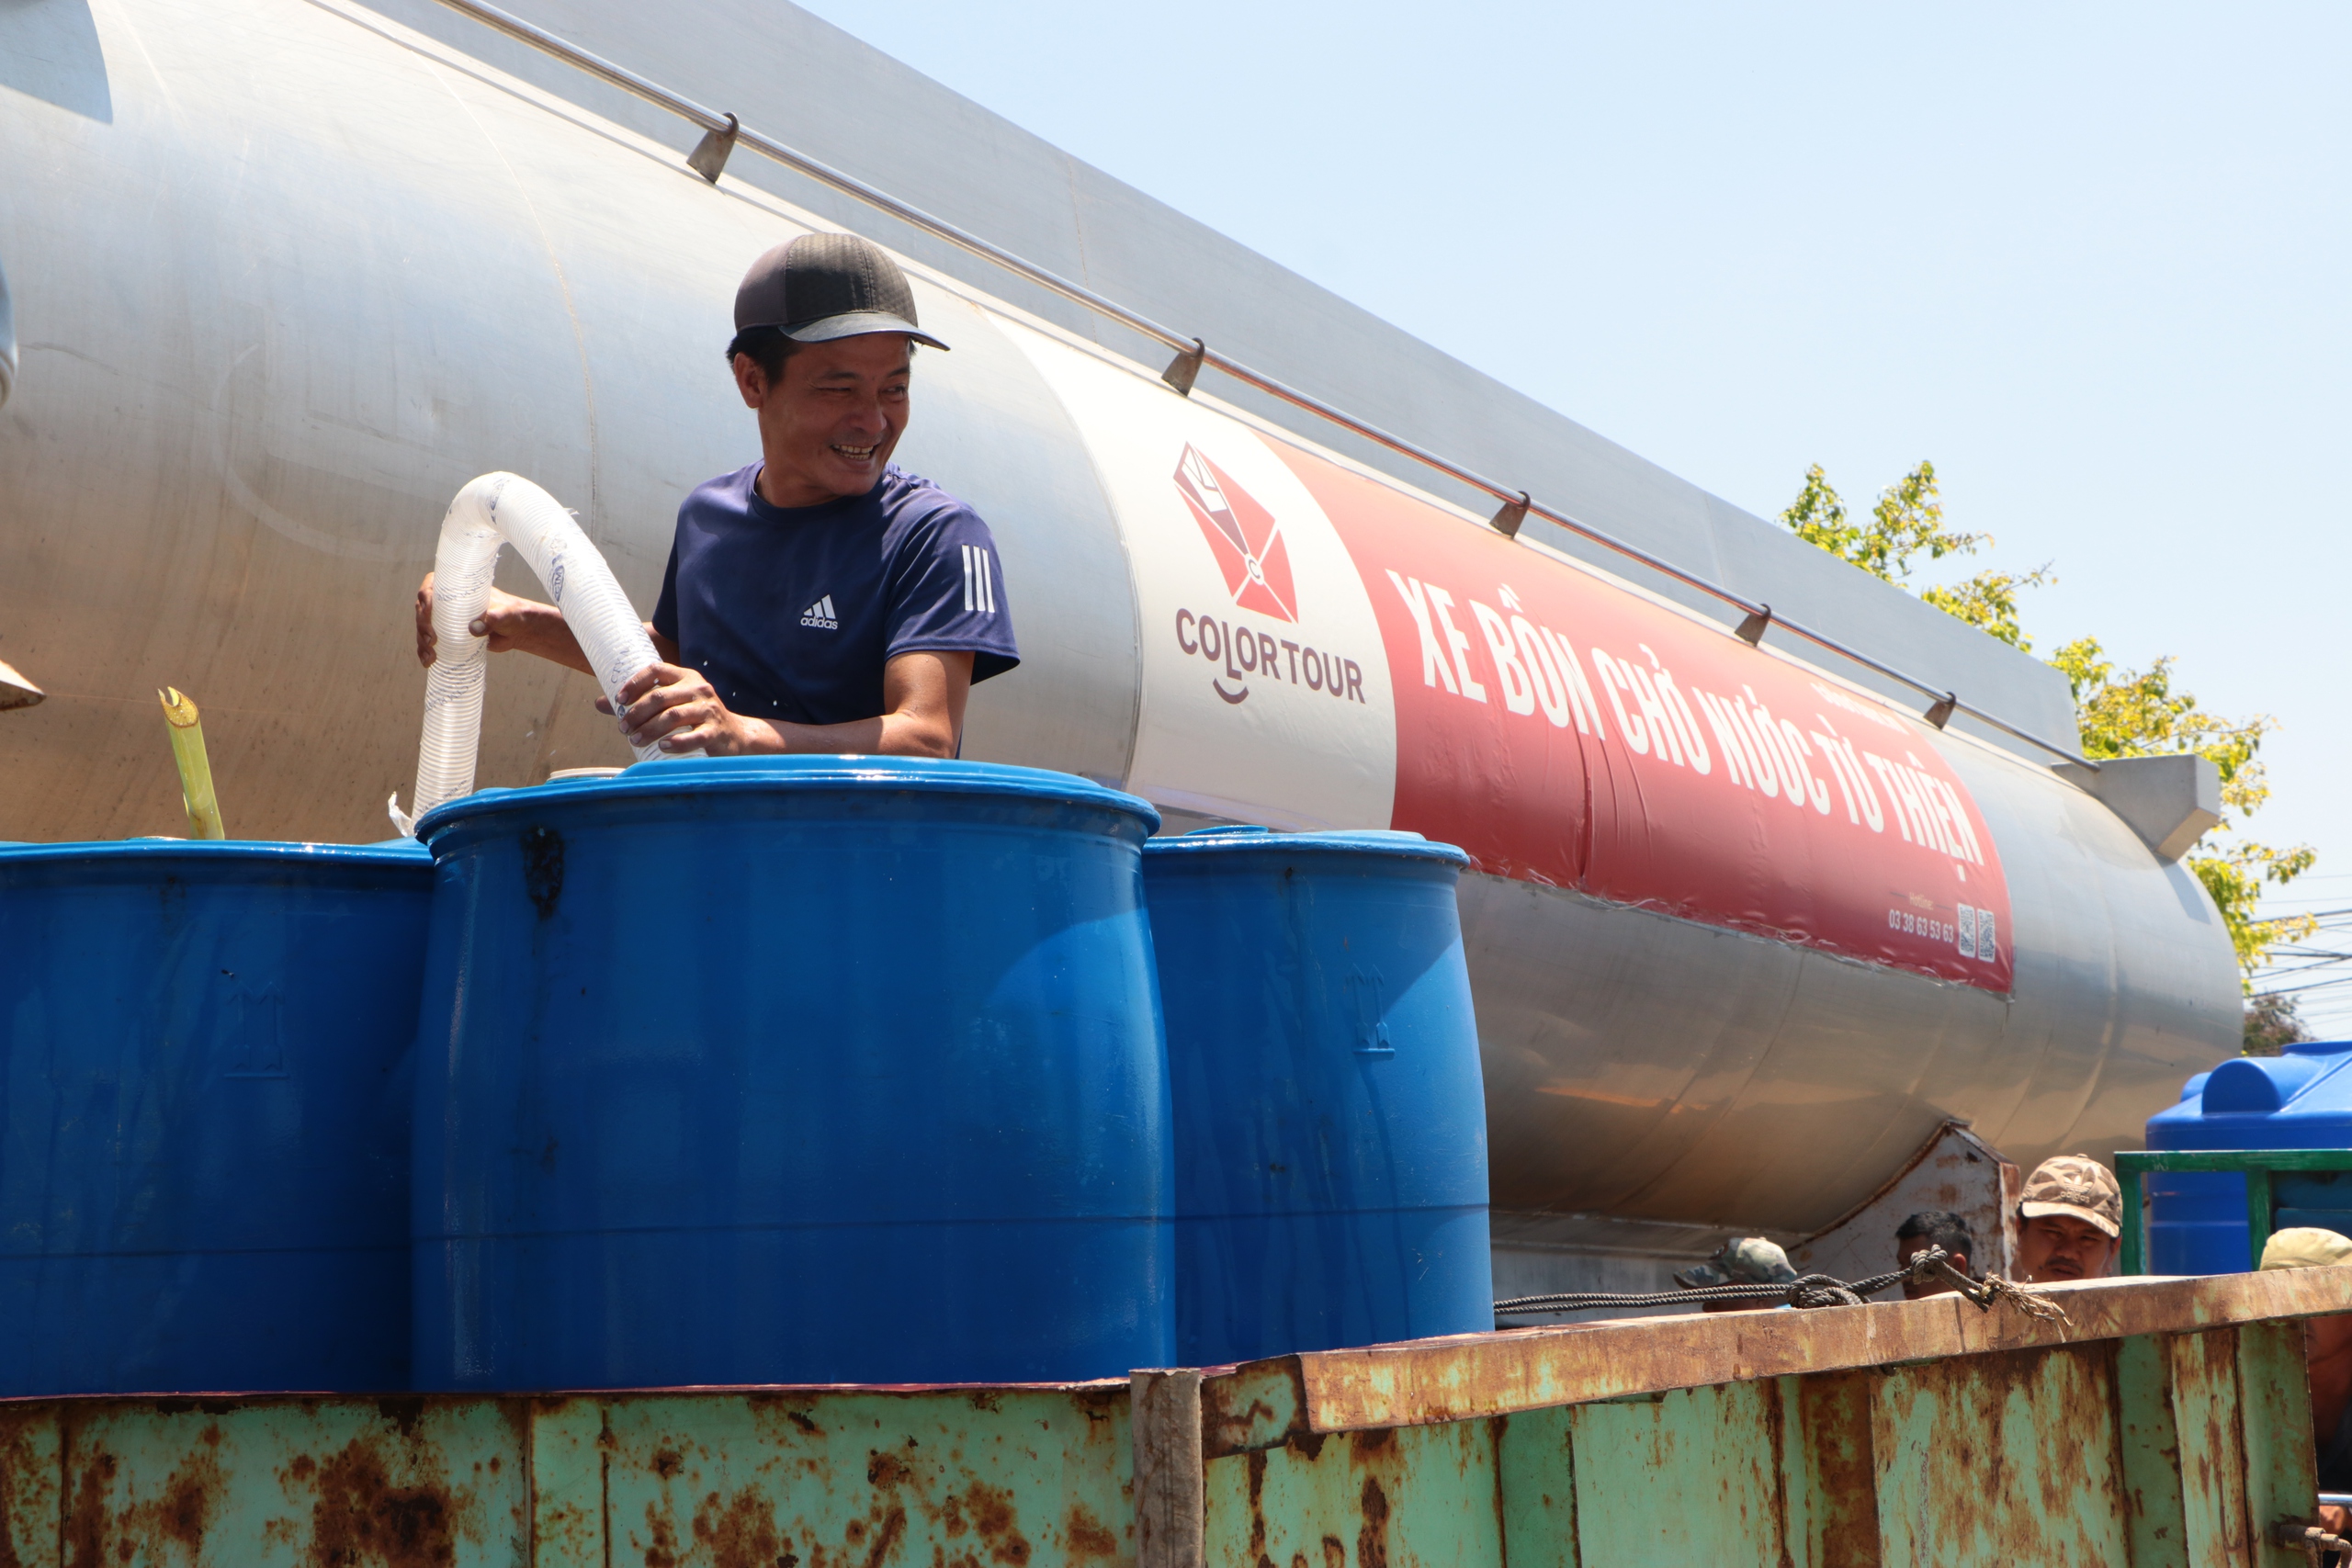 Một người dân chạy xe ba gác đem theo bồn chứa nước 1.000 lít từ TP HCM xuống Tiền Giang cứu hạn cho người dân- Ảnh 1.